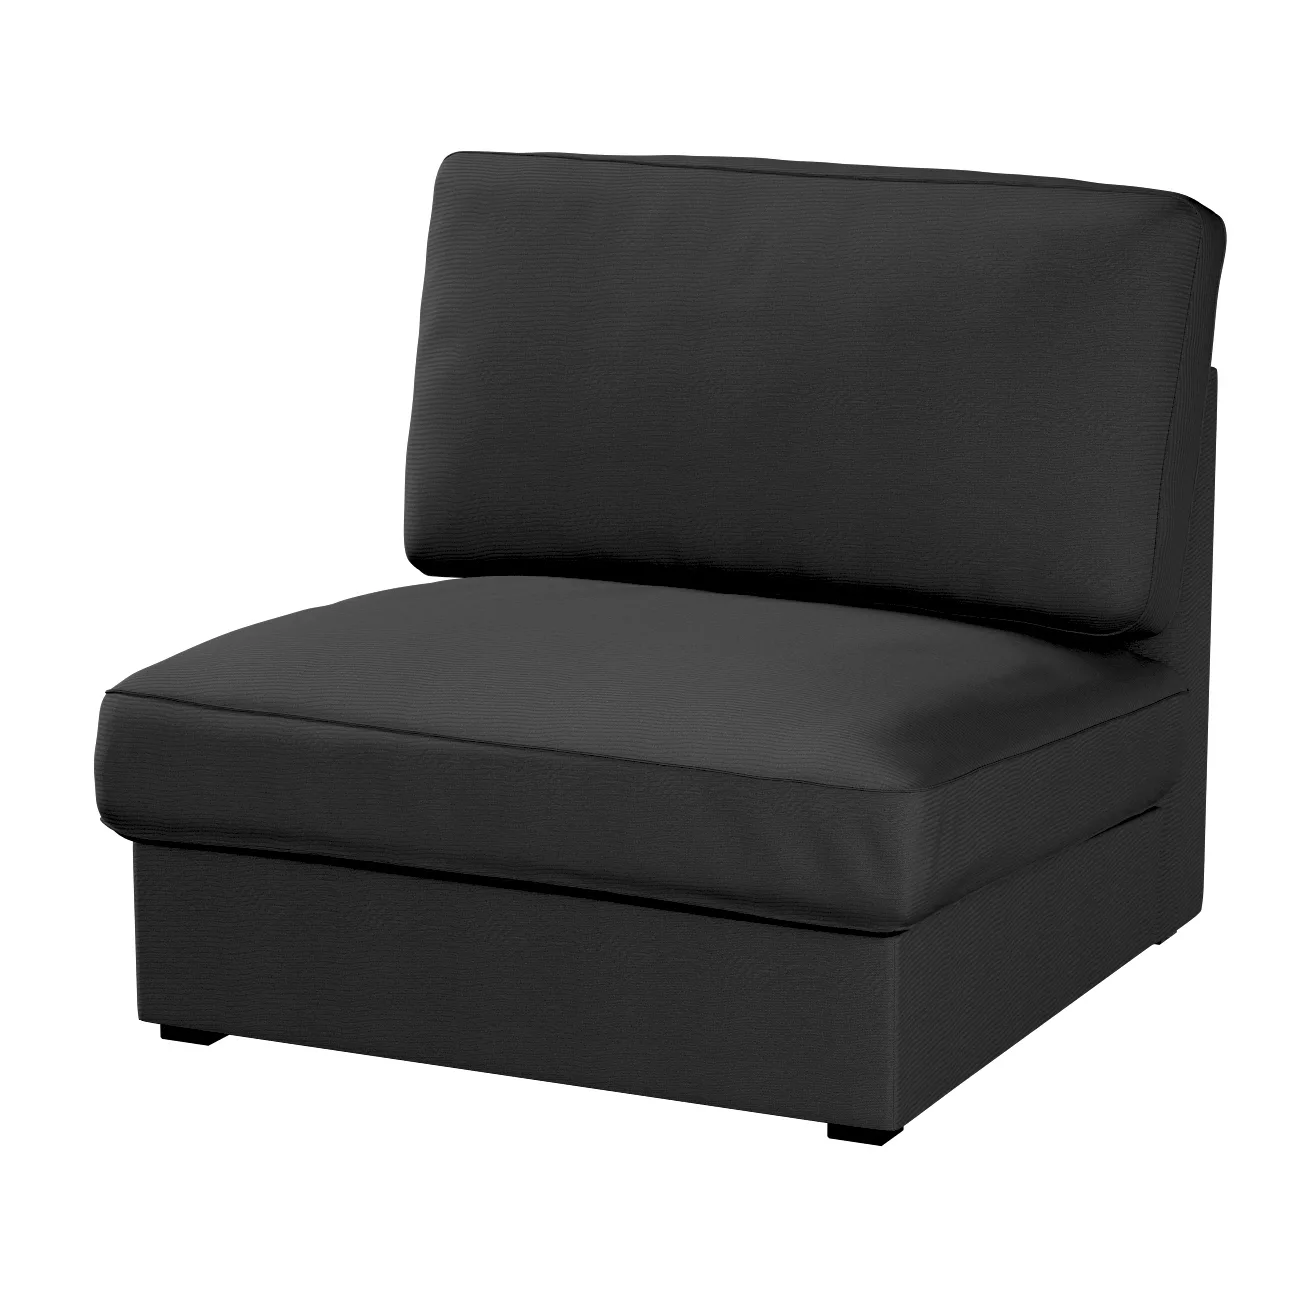 Bezug für Kivik Sessel nicht ausklappbar, schwarz, Bezug für Sessel Kivik, günstig online kaufen